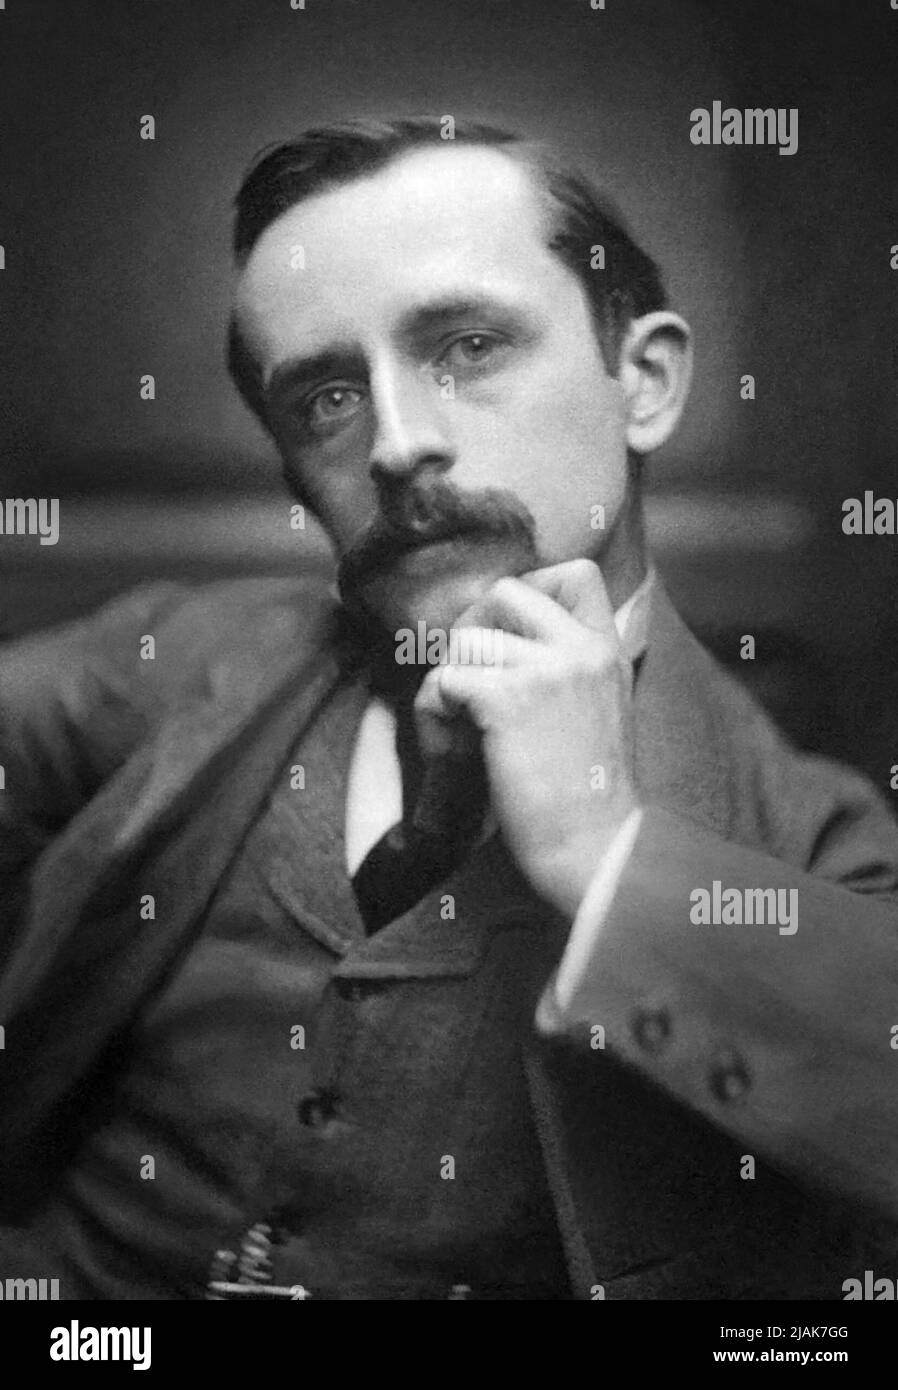 Sir James Matthew (J.M.) Barrie (1860-1937), dramaturge et romancier écossais le plus connu sous le nom d'auteur de Peter Pan, dans un portrait de Frederick Hollyer en 1892. Banque D'Images